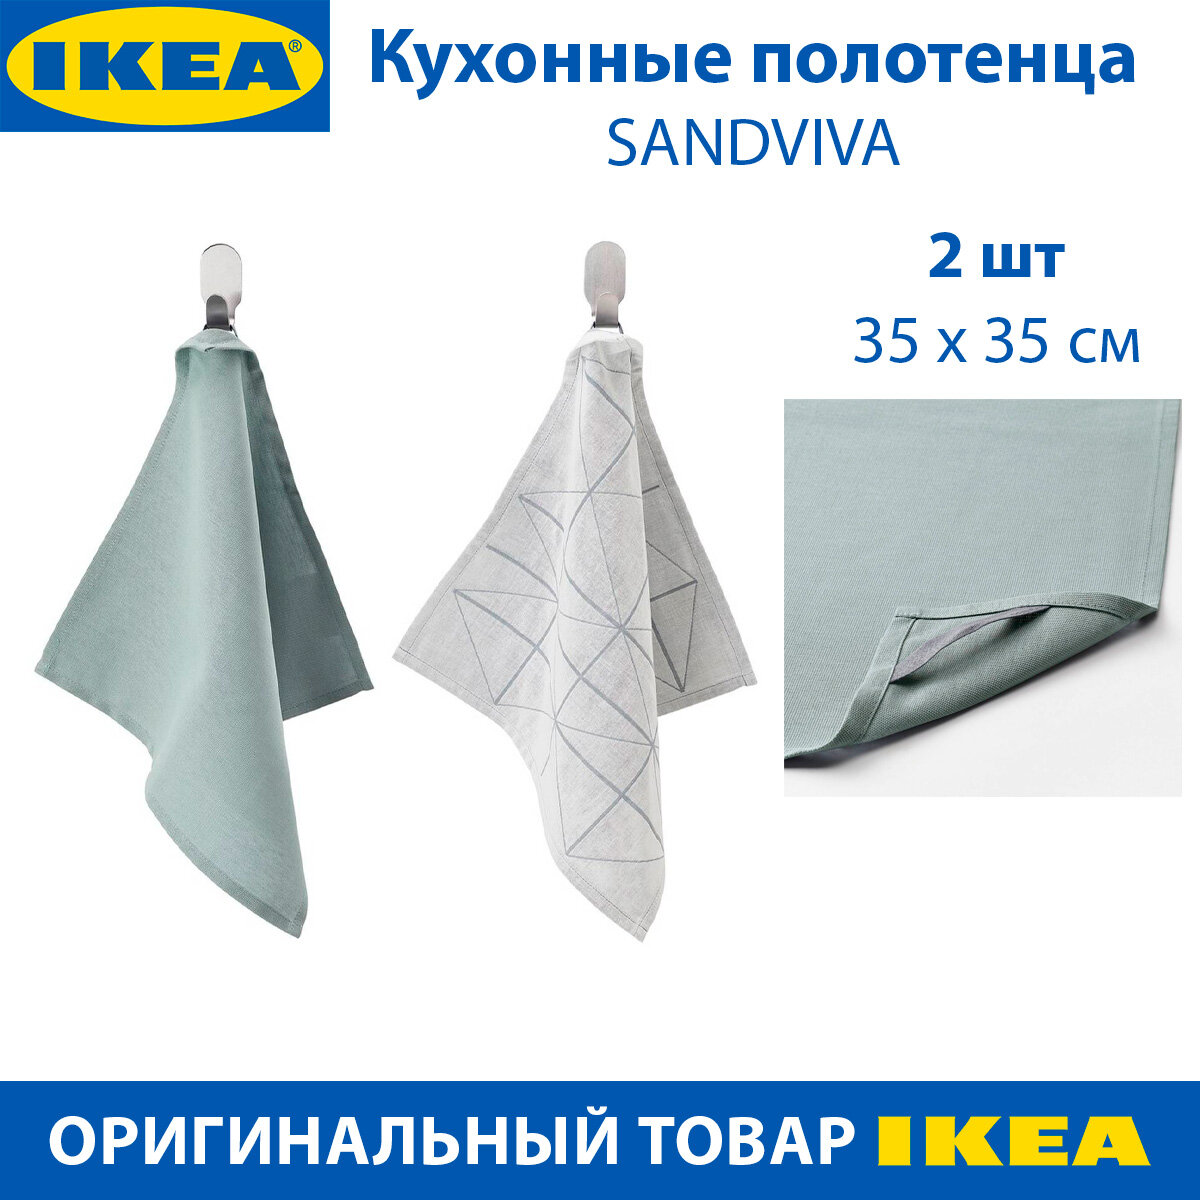 Кухонные полотенца IKEA SANDVIVA (сандвива), из хлопка, синее и серое, 35х35см, 2 шт